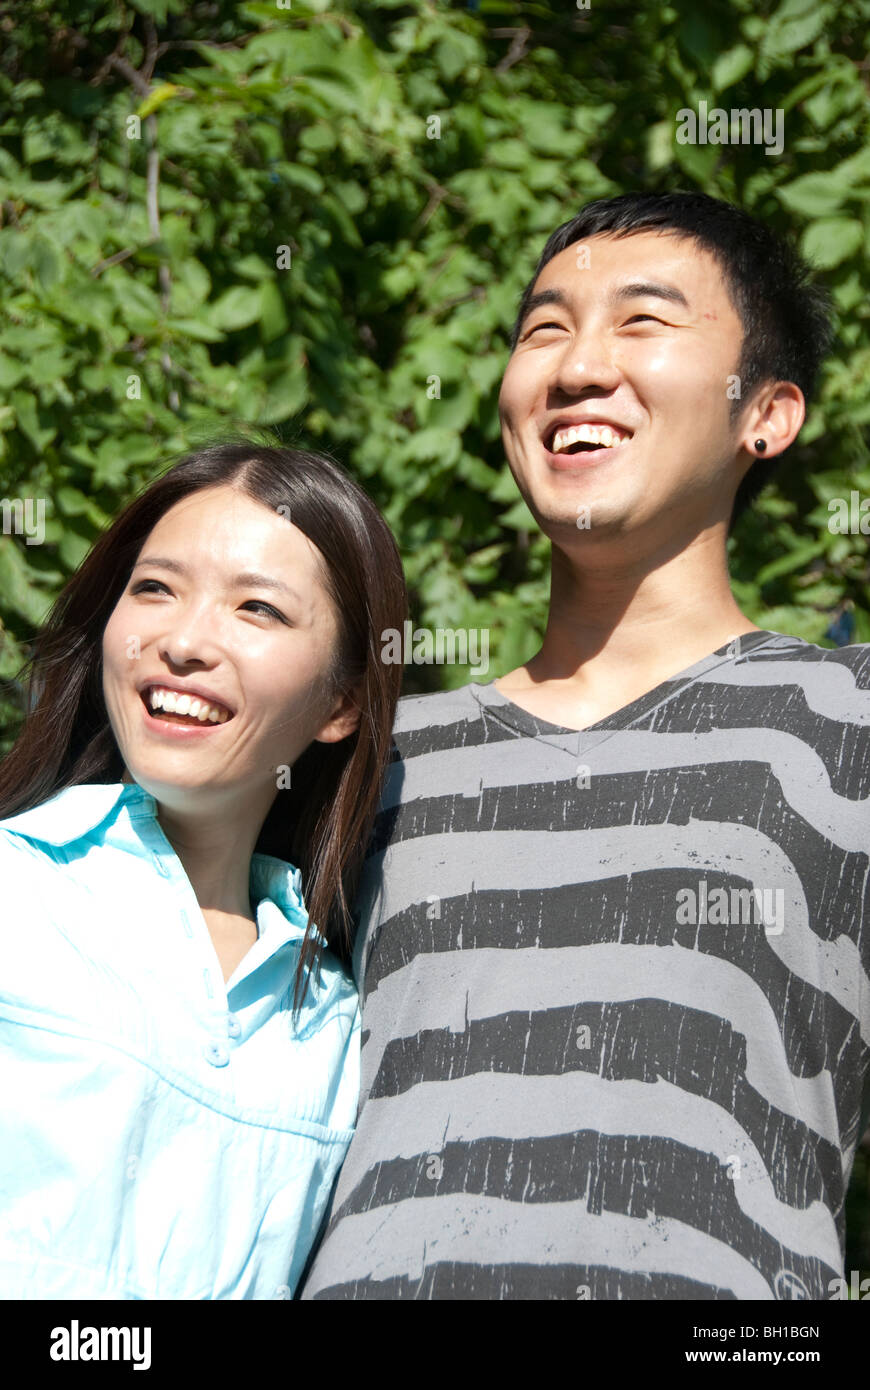 Jeune couple d'origine asiatique dans le parc Assiniboine, Winnipeg, Manitoba, Canada Banque D'Images